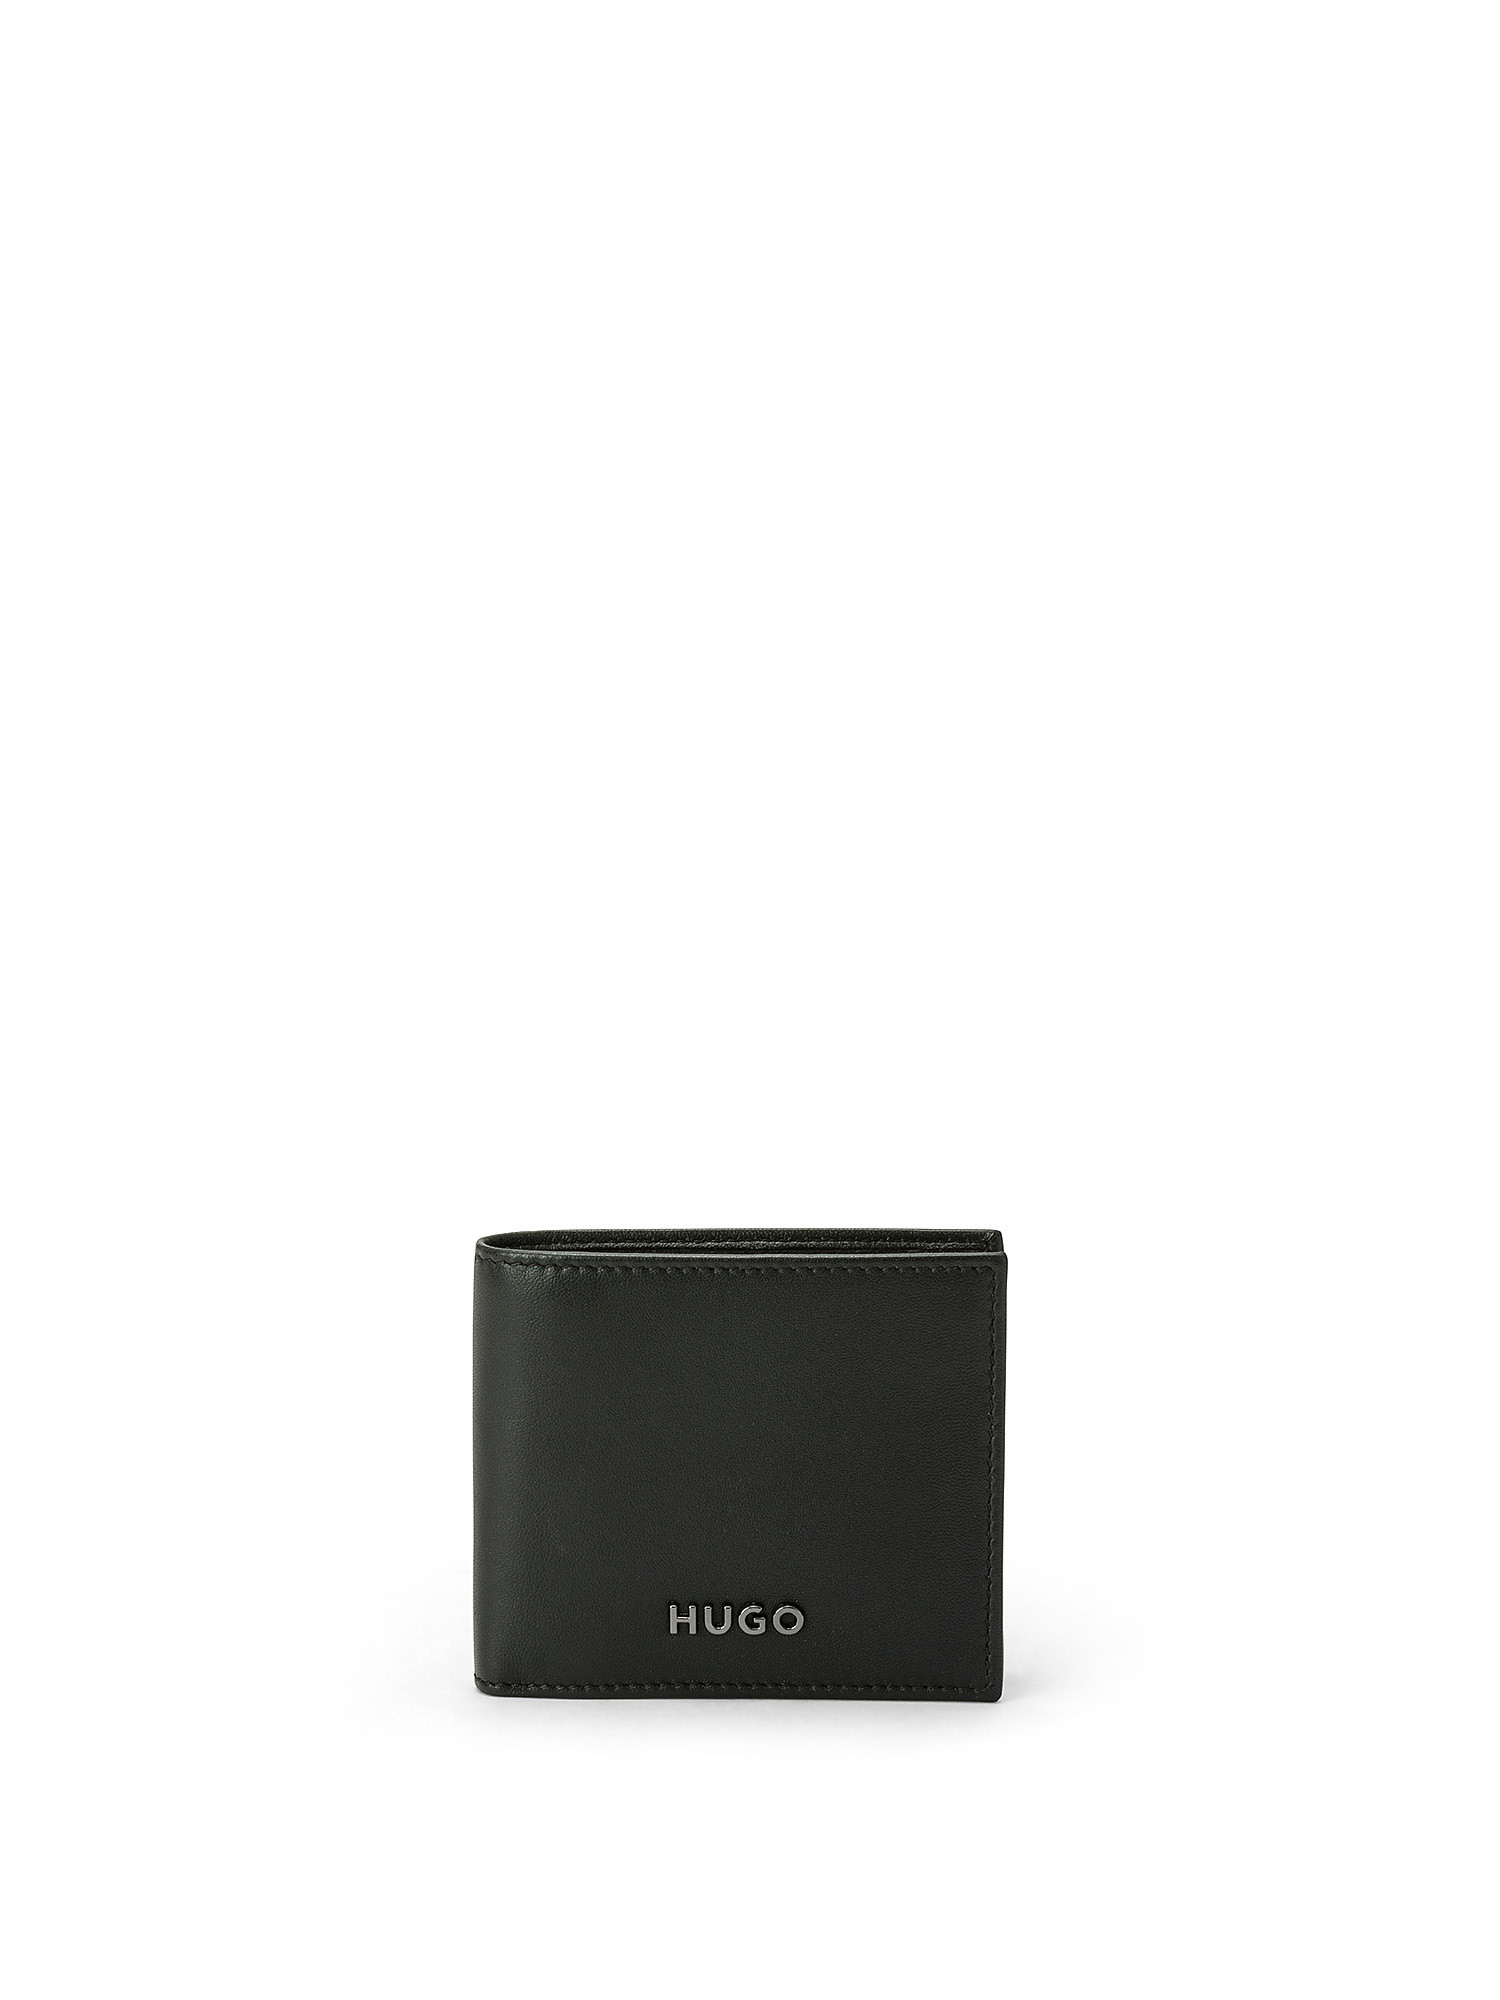 Hugo - Portafoglio in pelle con logo, Nero, large image number 0